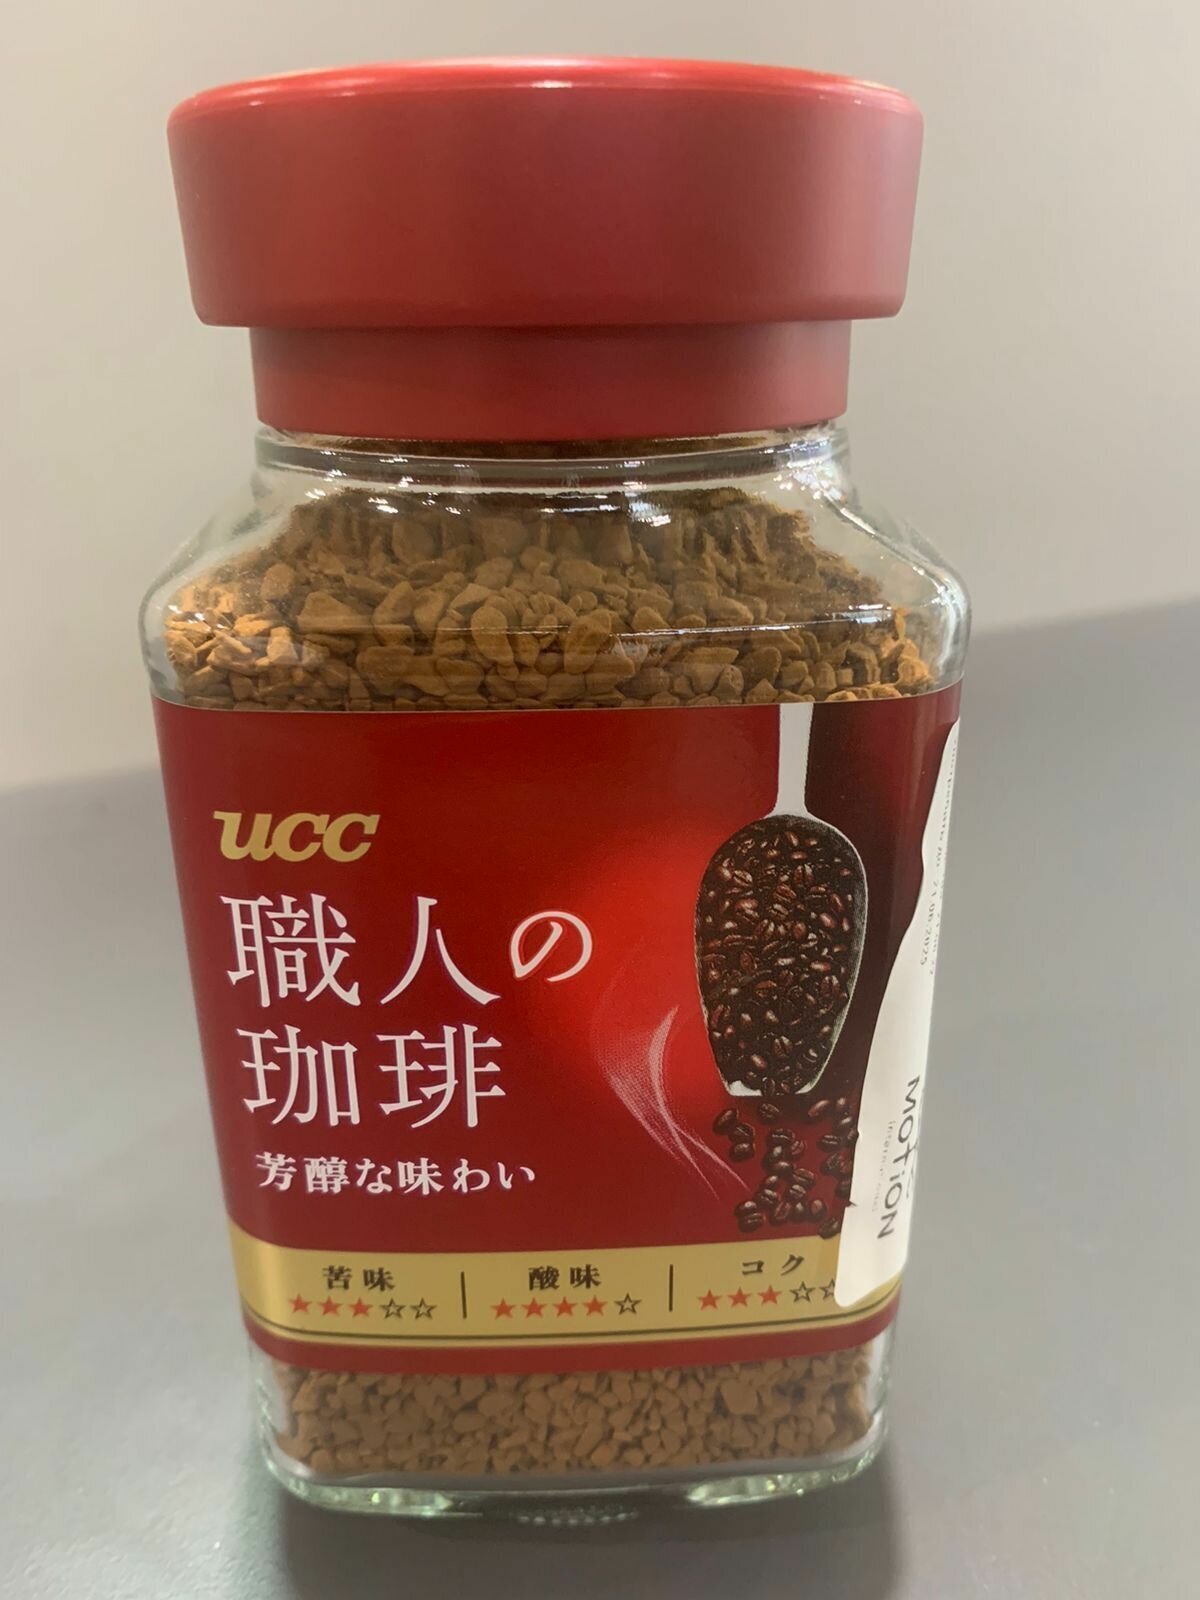 Японский растворимый кофе "UCC Rich taste" 90 гр.